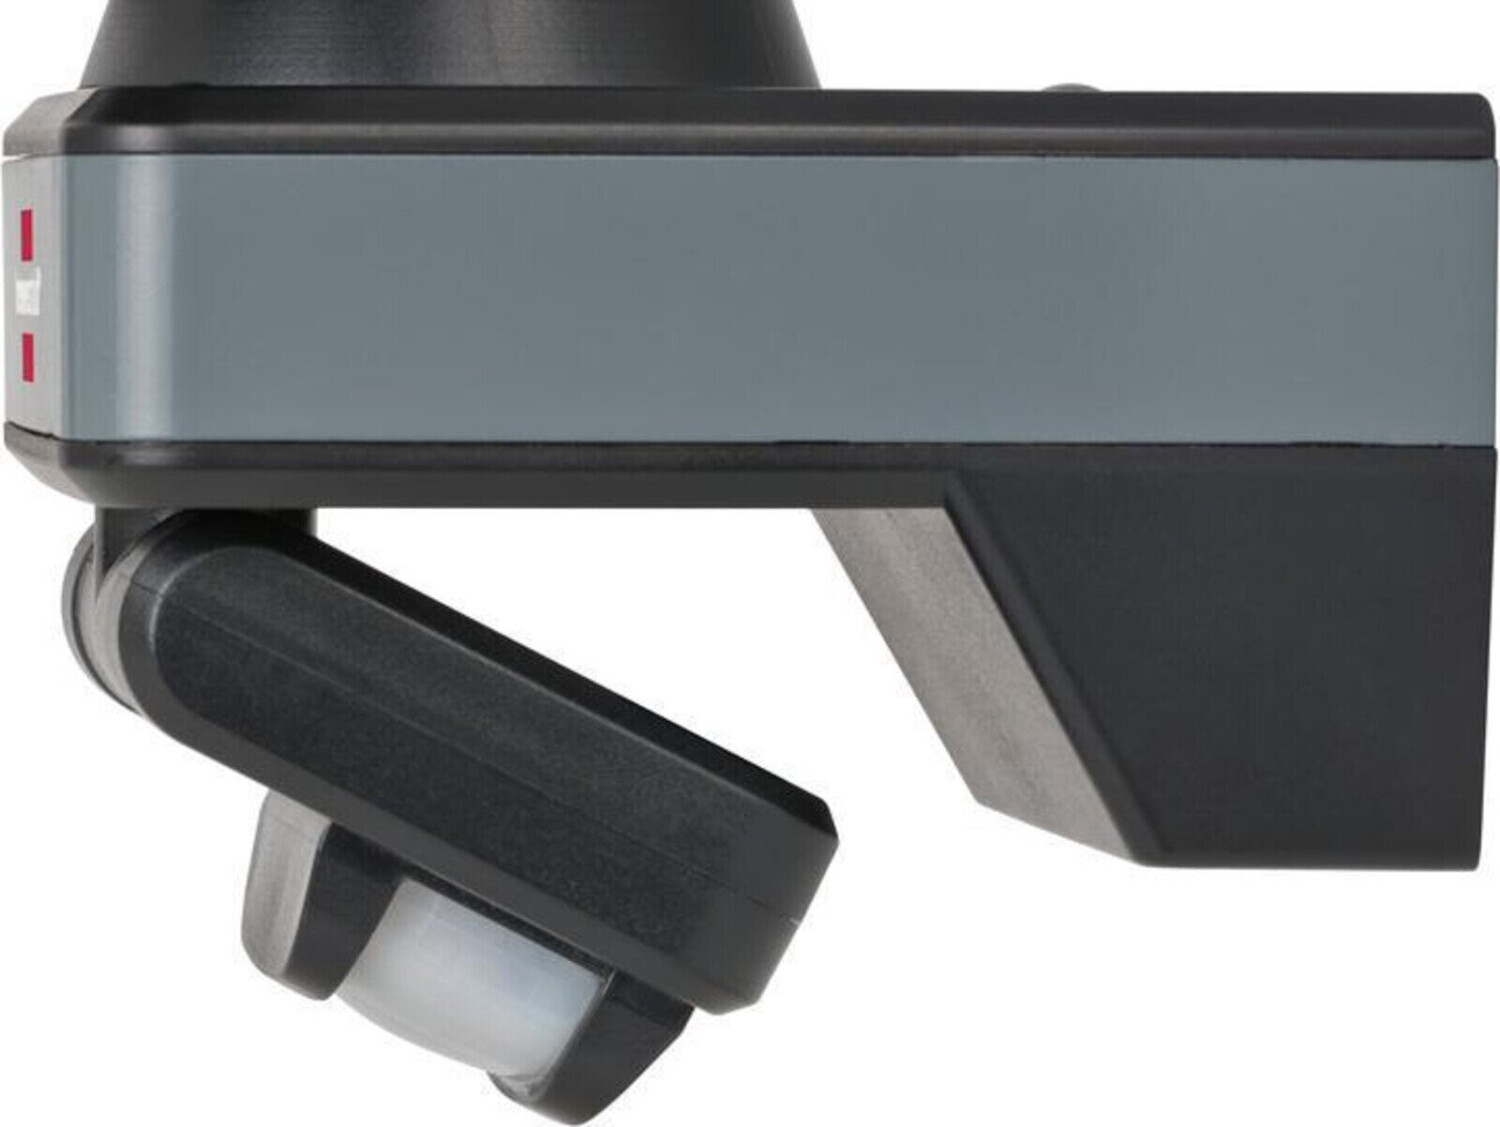 Brennenstuhl Connect WiFi LED-Strahler WF 2050 P mit Bewegungsmelder  (1179050010) ab 43,33 € | Preisvergleich bei